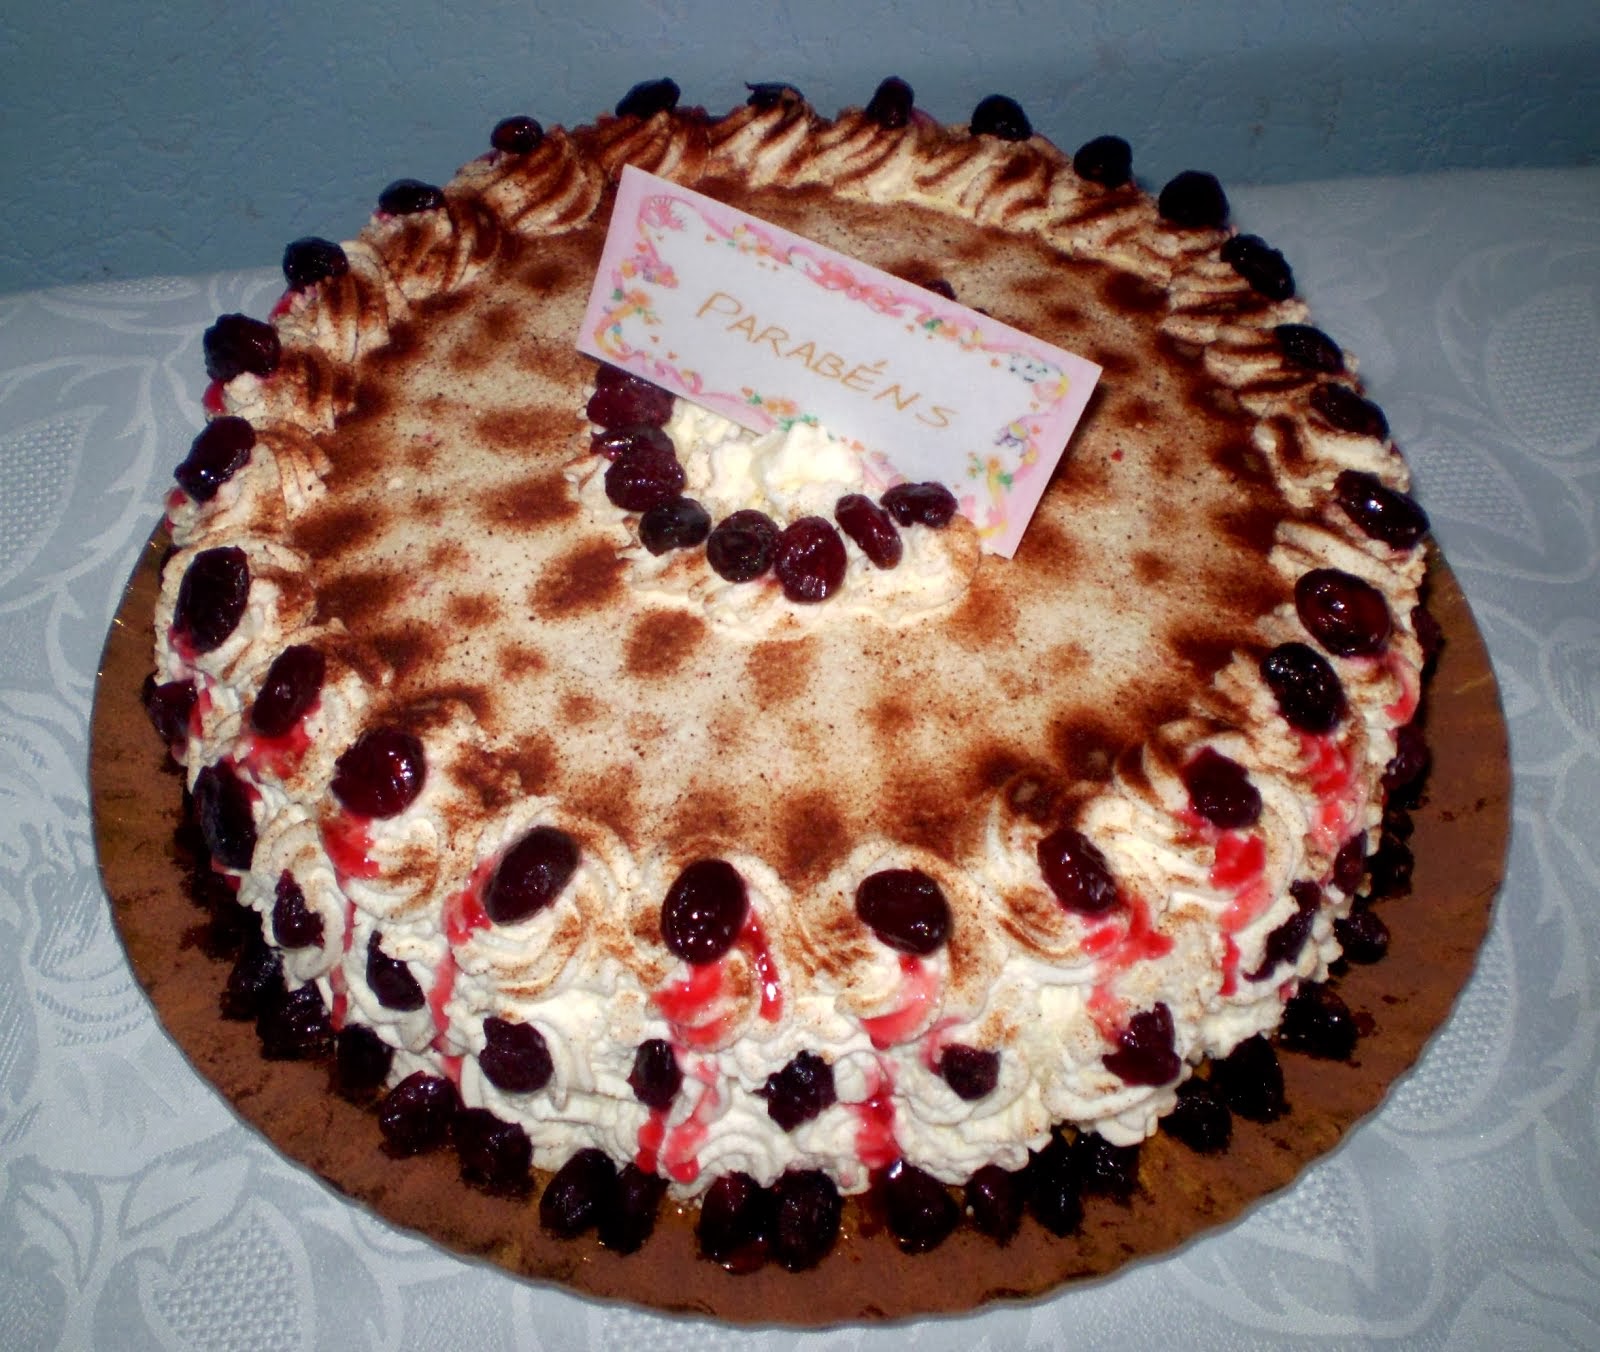 Red velvet cake/Bolo de veludo vermelho com cranberry